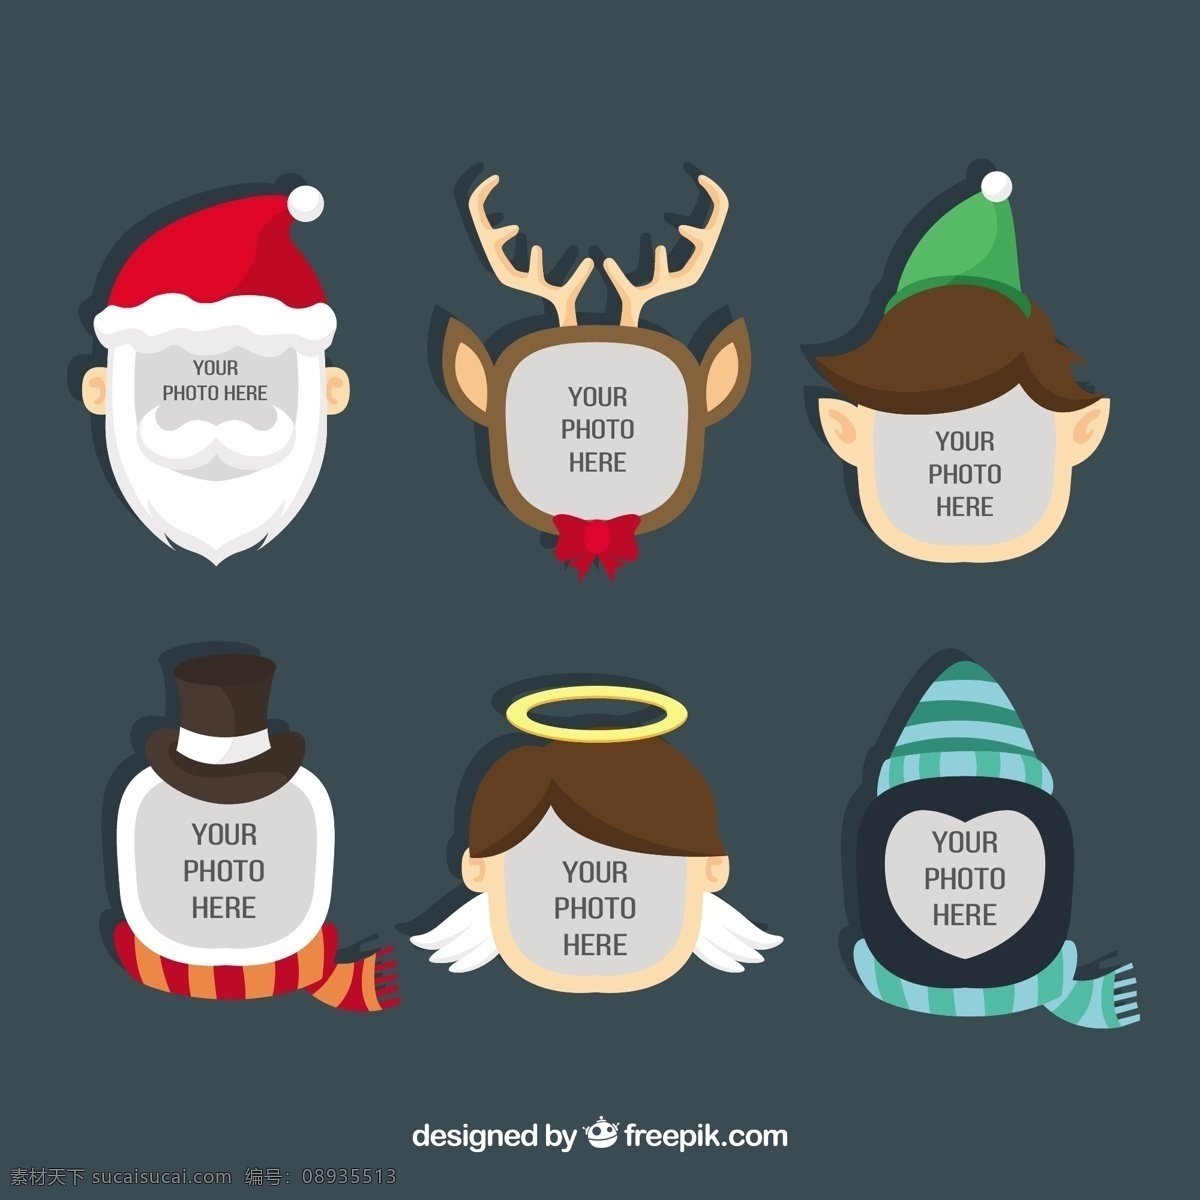 圣诞节 模板 圣诞快乐 冬天 天使 快乐 圣 克劳斯 头像 圣诞老人 庆祝 父亲的节日 雪人 驯鹿 企鹅 节日快乐 精灵 季节 灰色